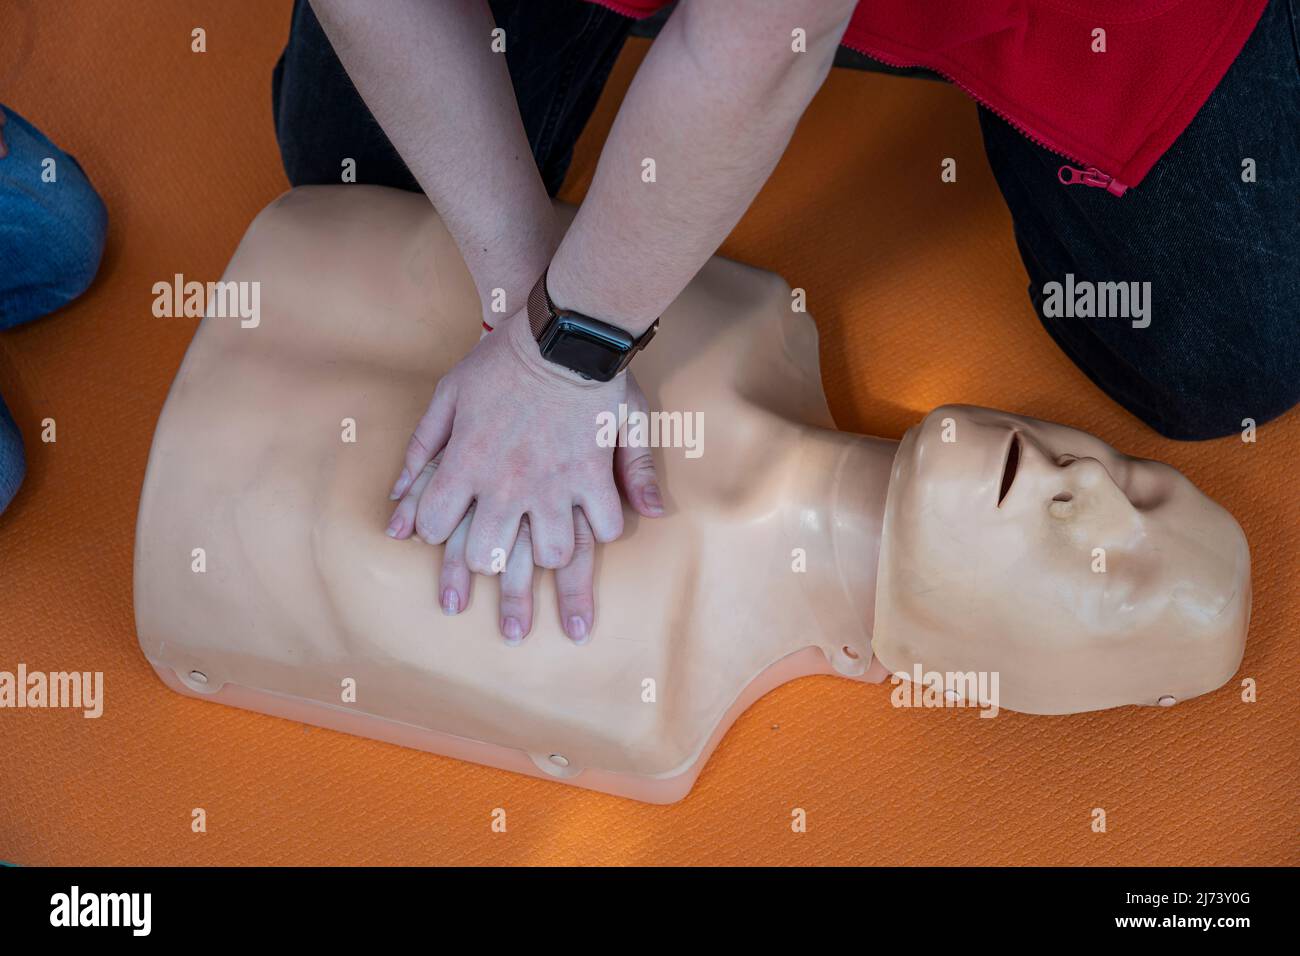 Frau, die CPR an einer Schaufensterpuppe zum Training durchführt. Direkte Herzmassage. Erste-Hilfe-Training auf einem medizinischen Dummy. Herzmassage bei Herzstillstand Stockfoto